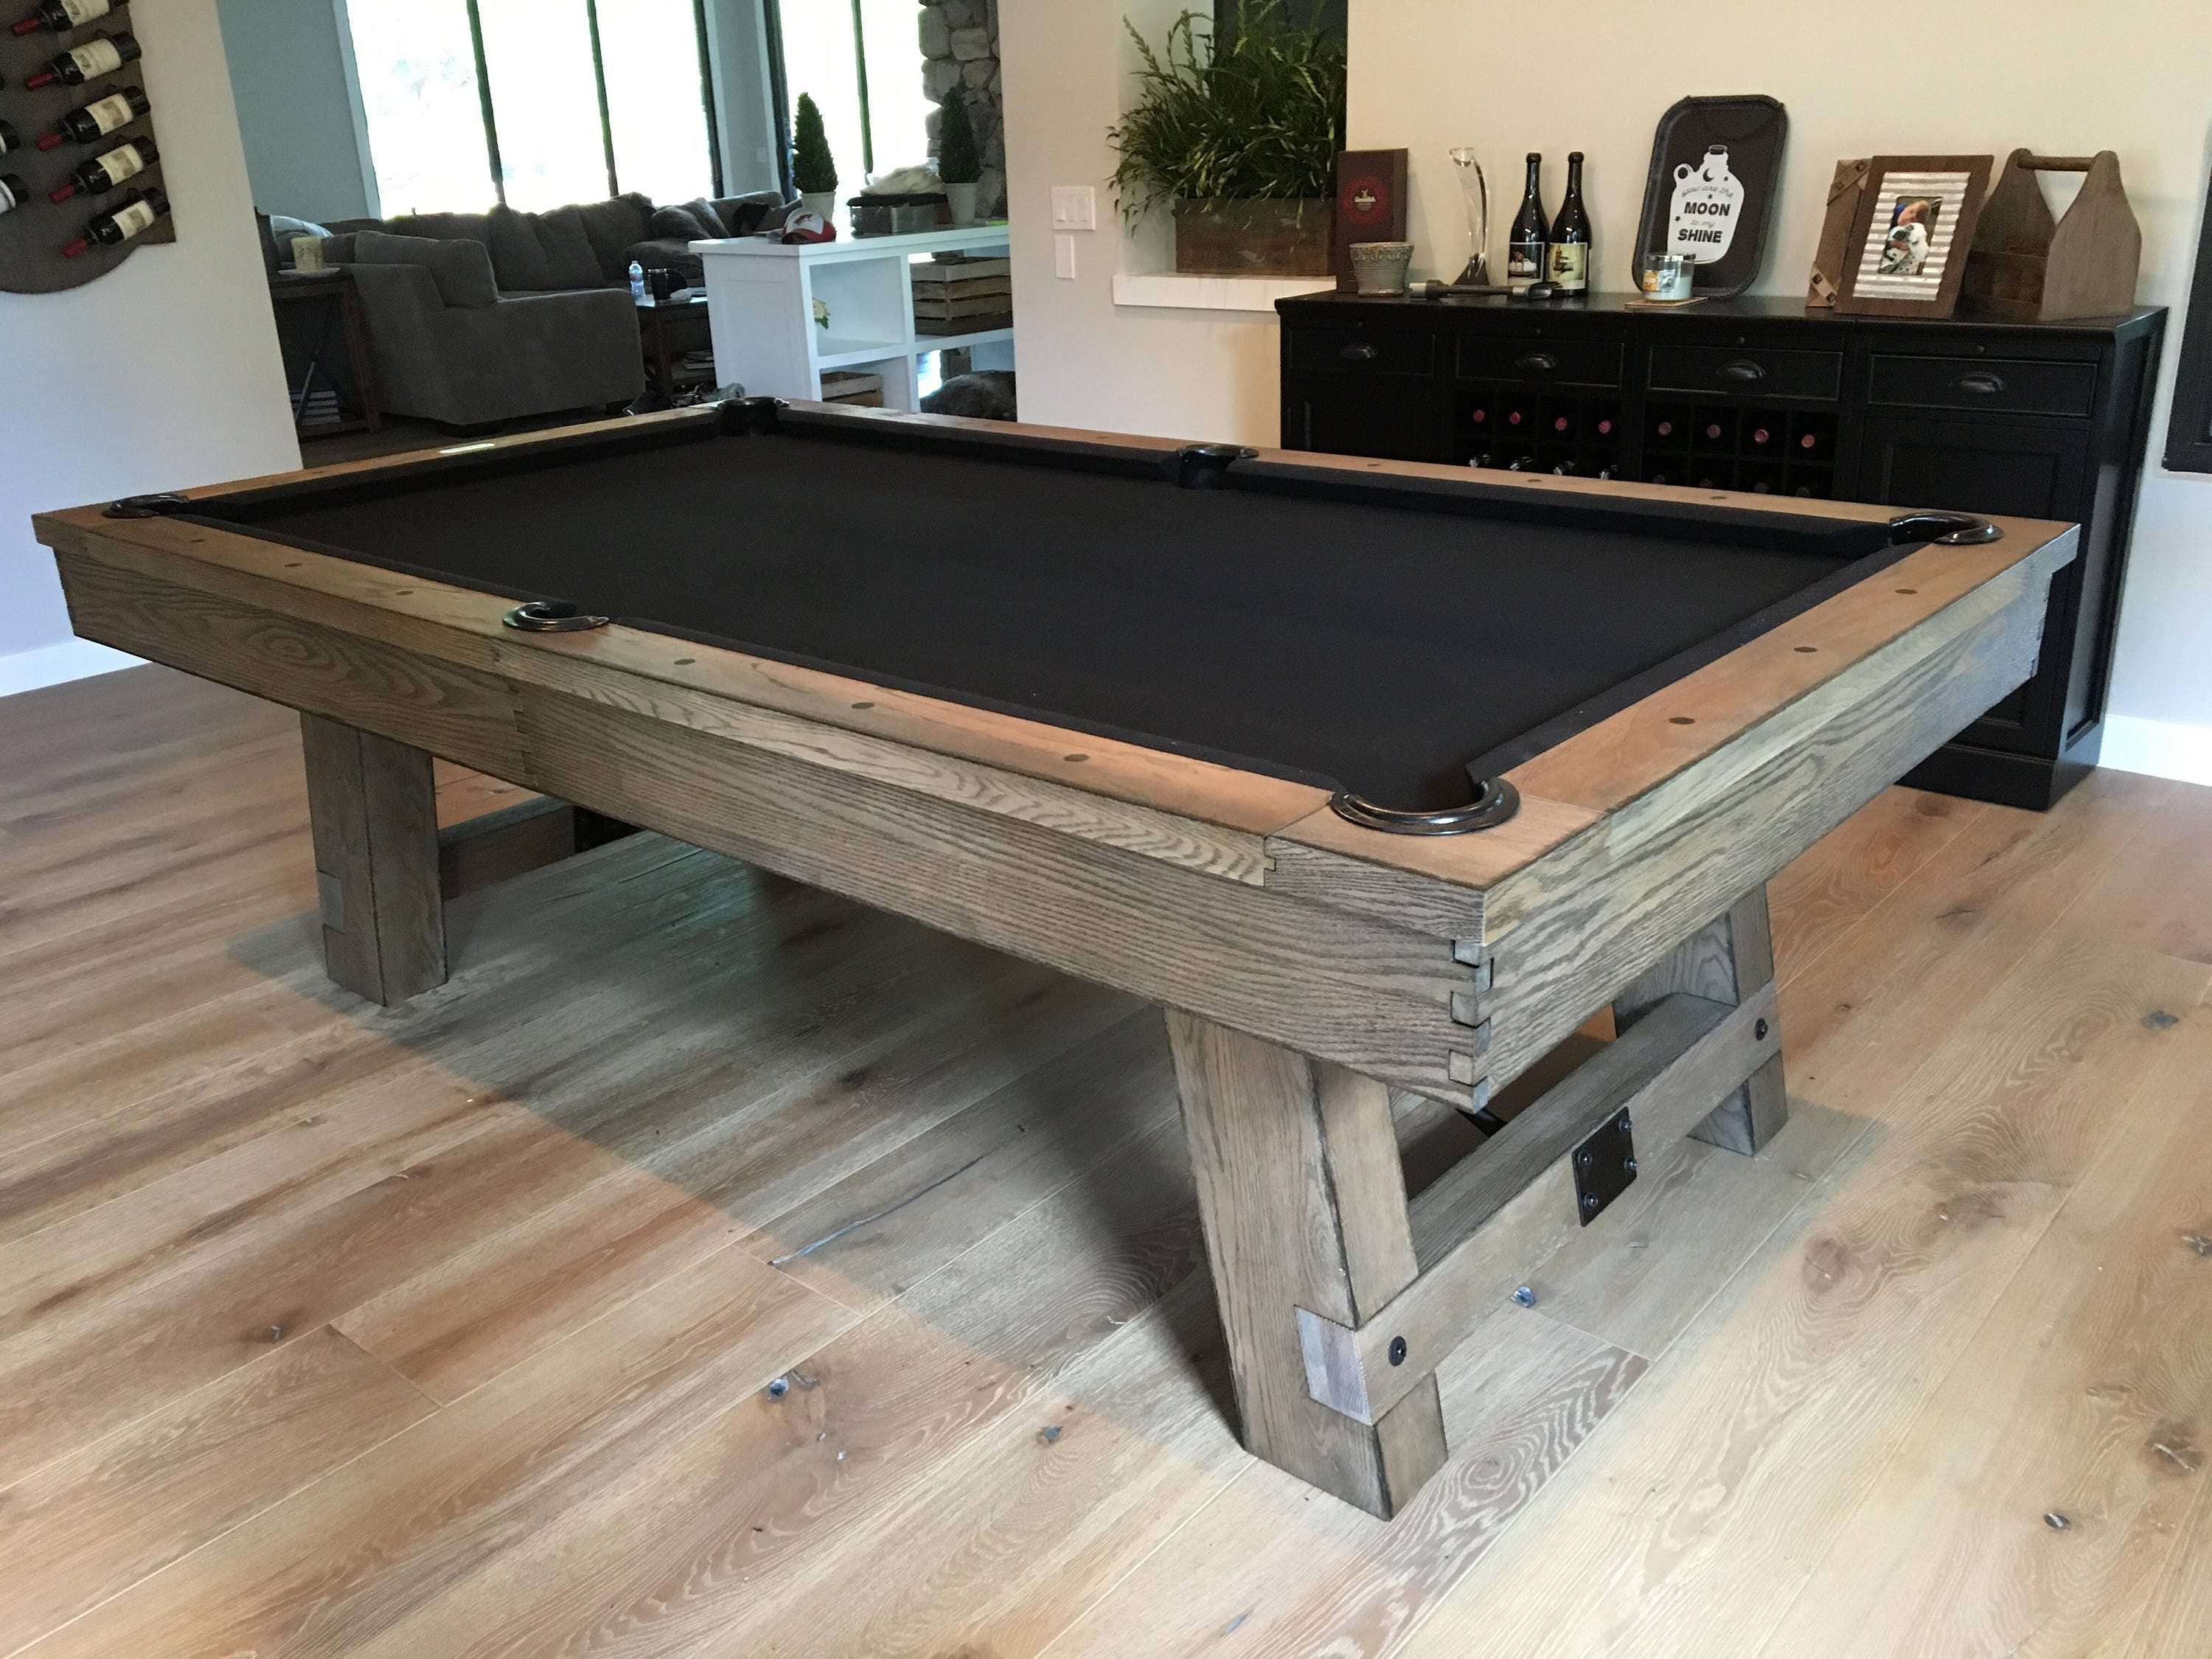 8' Custom Pool Table-Silvered Weathered Pool Table | Etsy